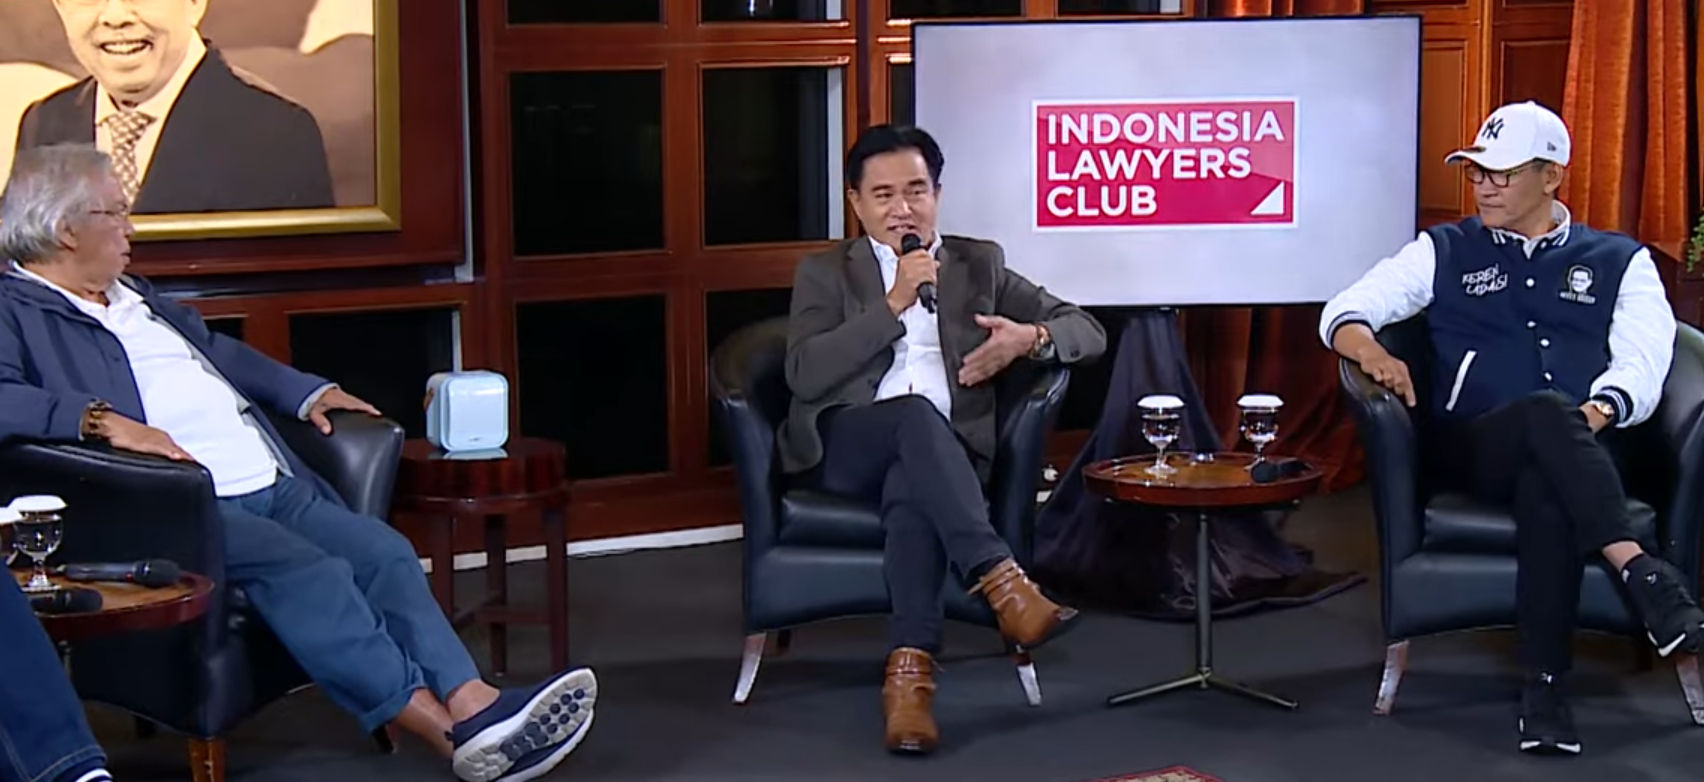 foto: Indonesia Lawyers Club